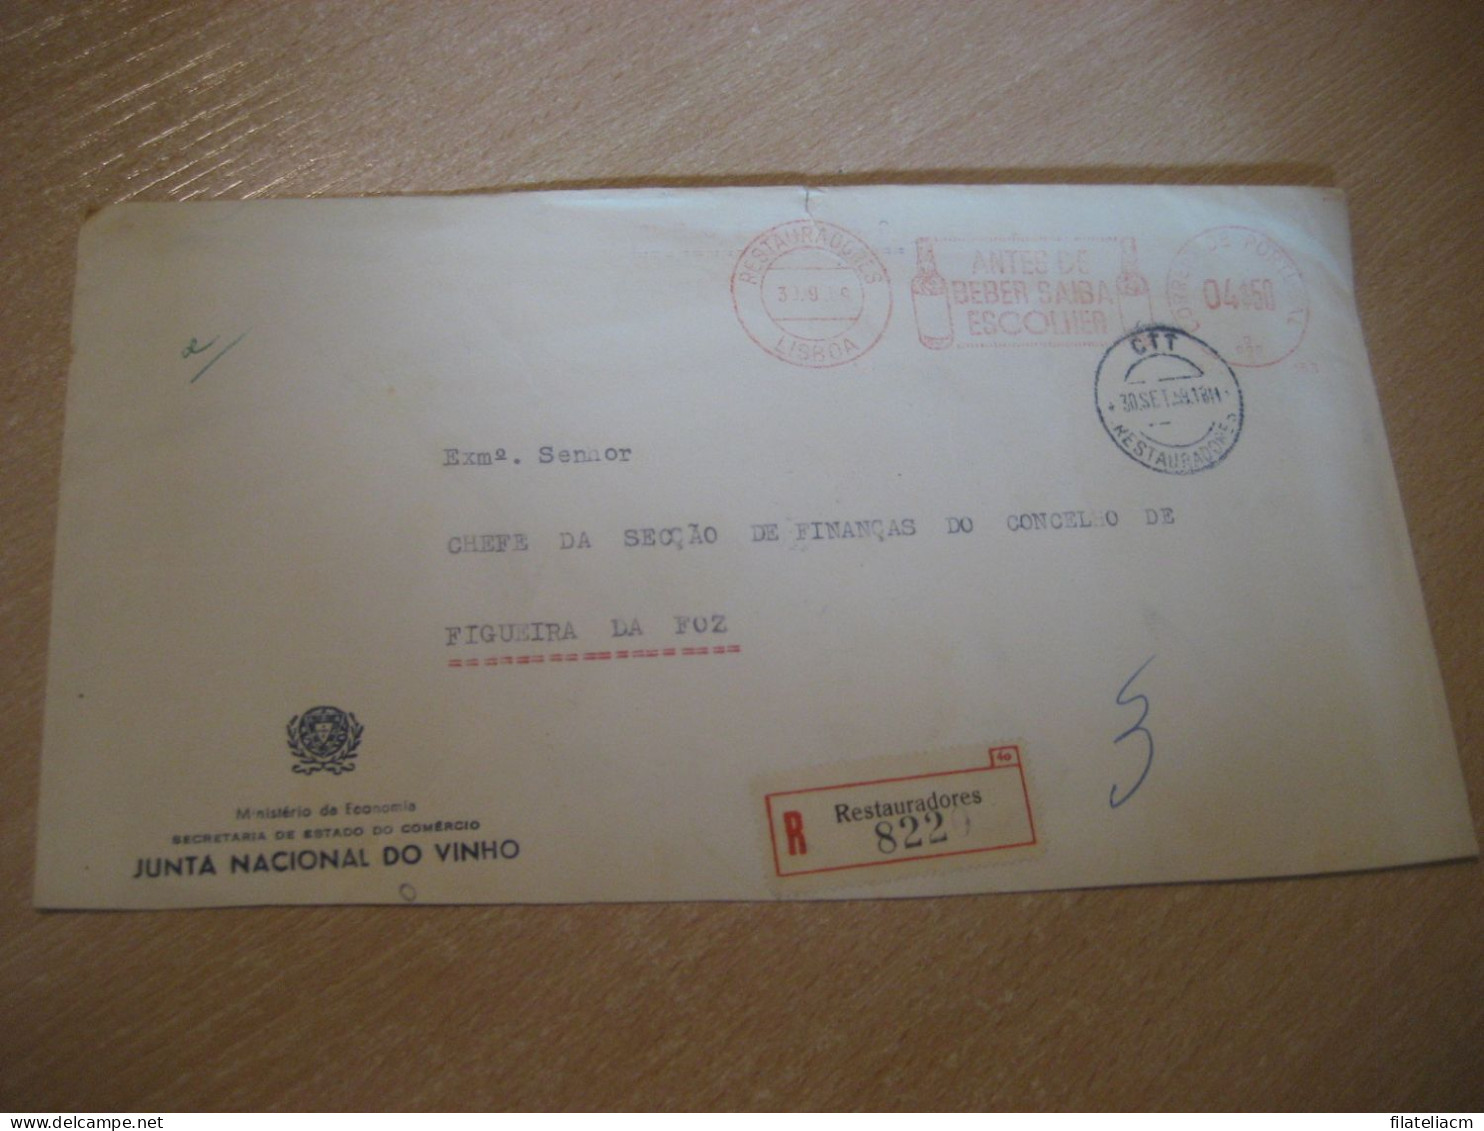 LISBOA 1959 To Figueira Da Foz Beber Junta Vinho Wine Enology Drink Registered Meter Mail Slight Faults Cover PORTUGAL - Covers & Documents